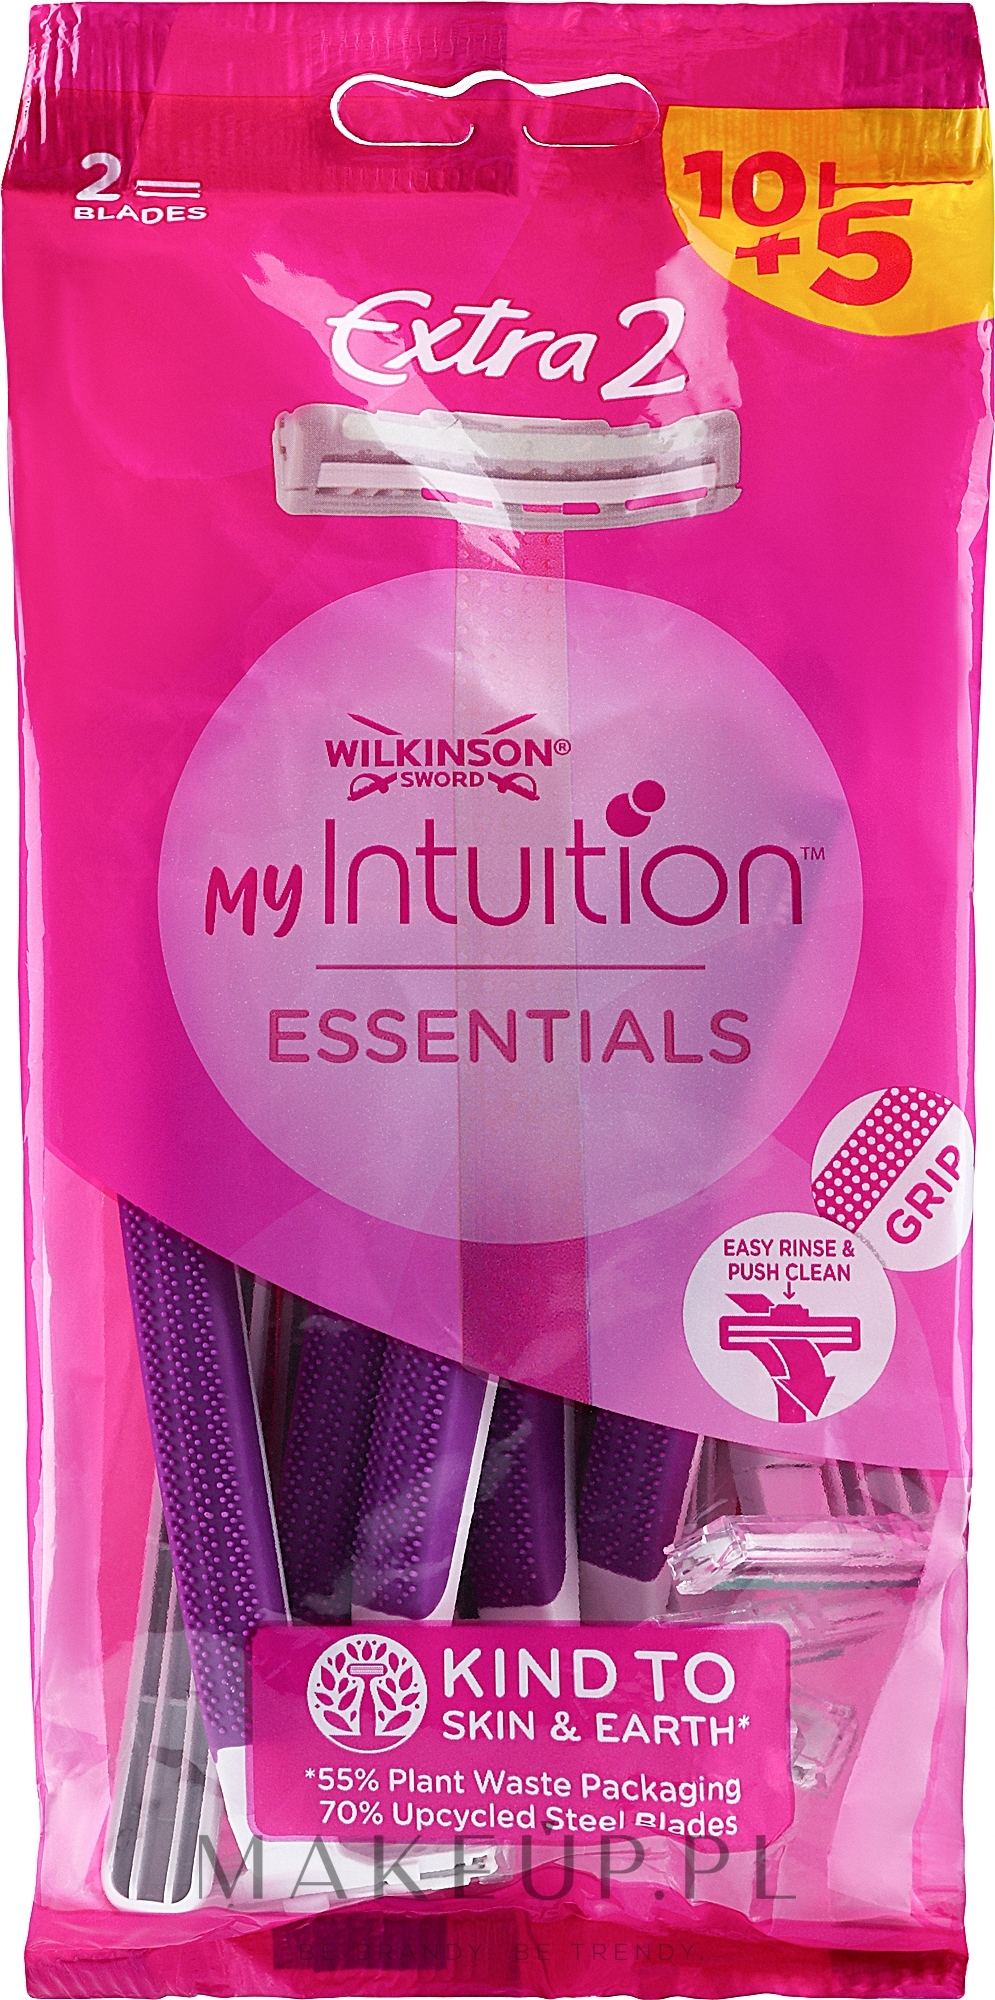 Jednorazowe maszynki do golenia, 15 szt. - Wilkinson Sword My Intuition Essentials Extra 2 — Zdjęcie 15 szt.